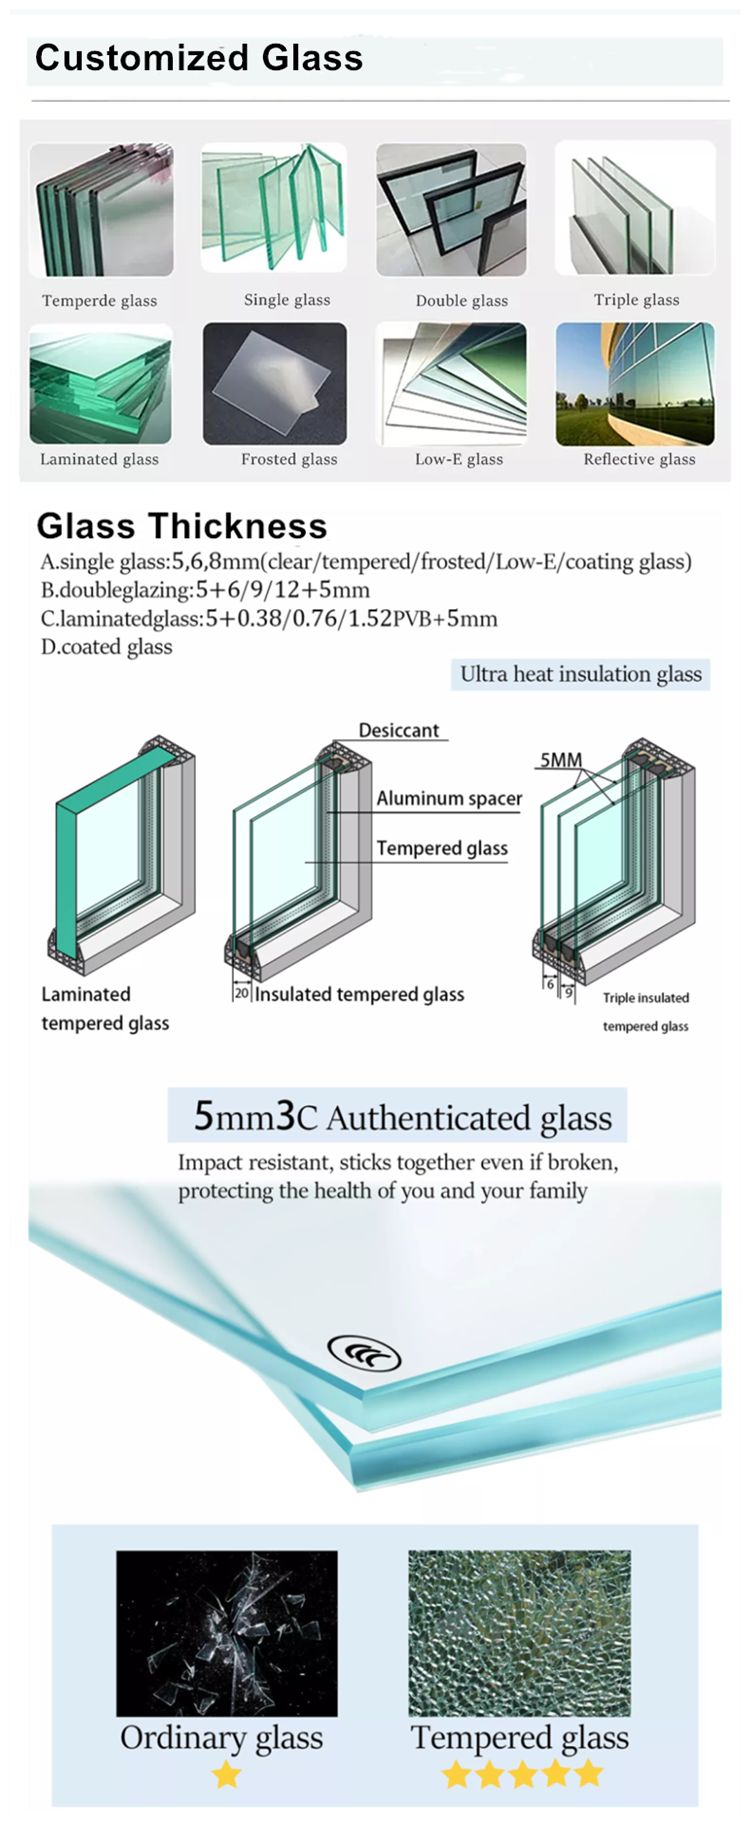 customized glass bi folding door